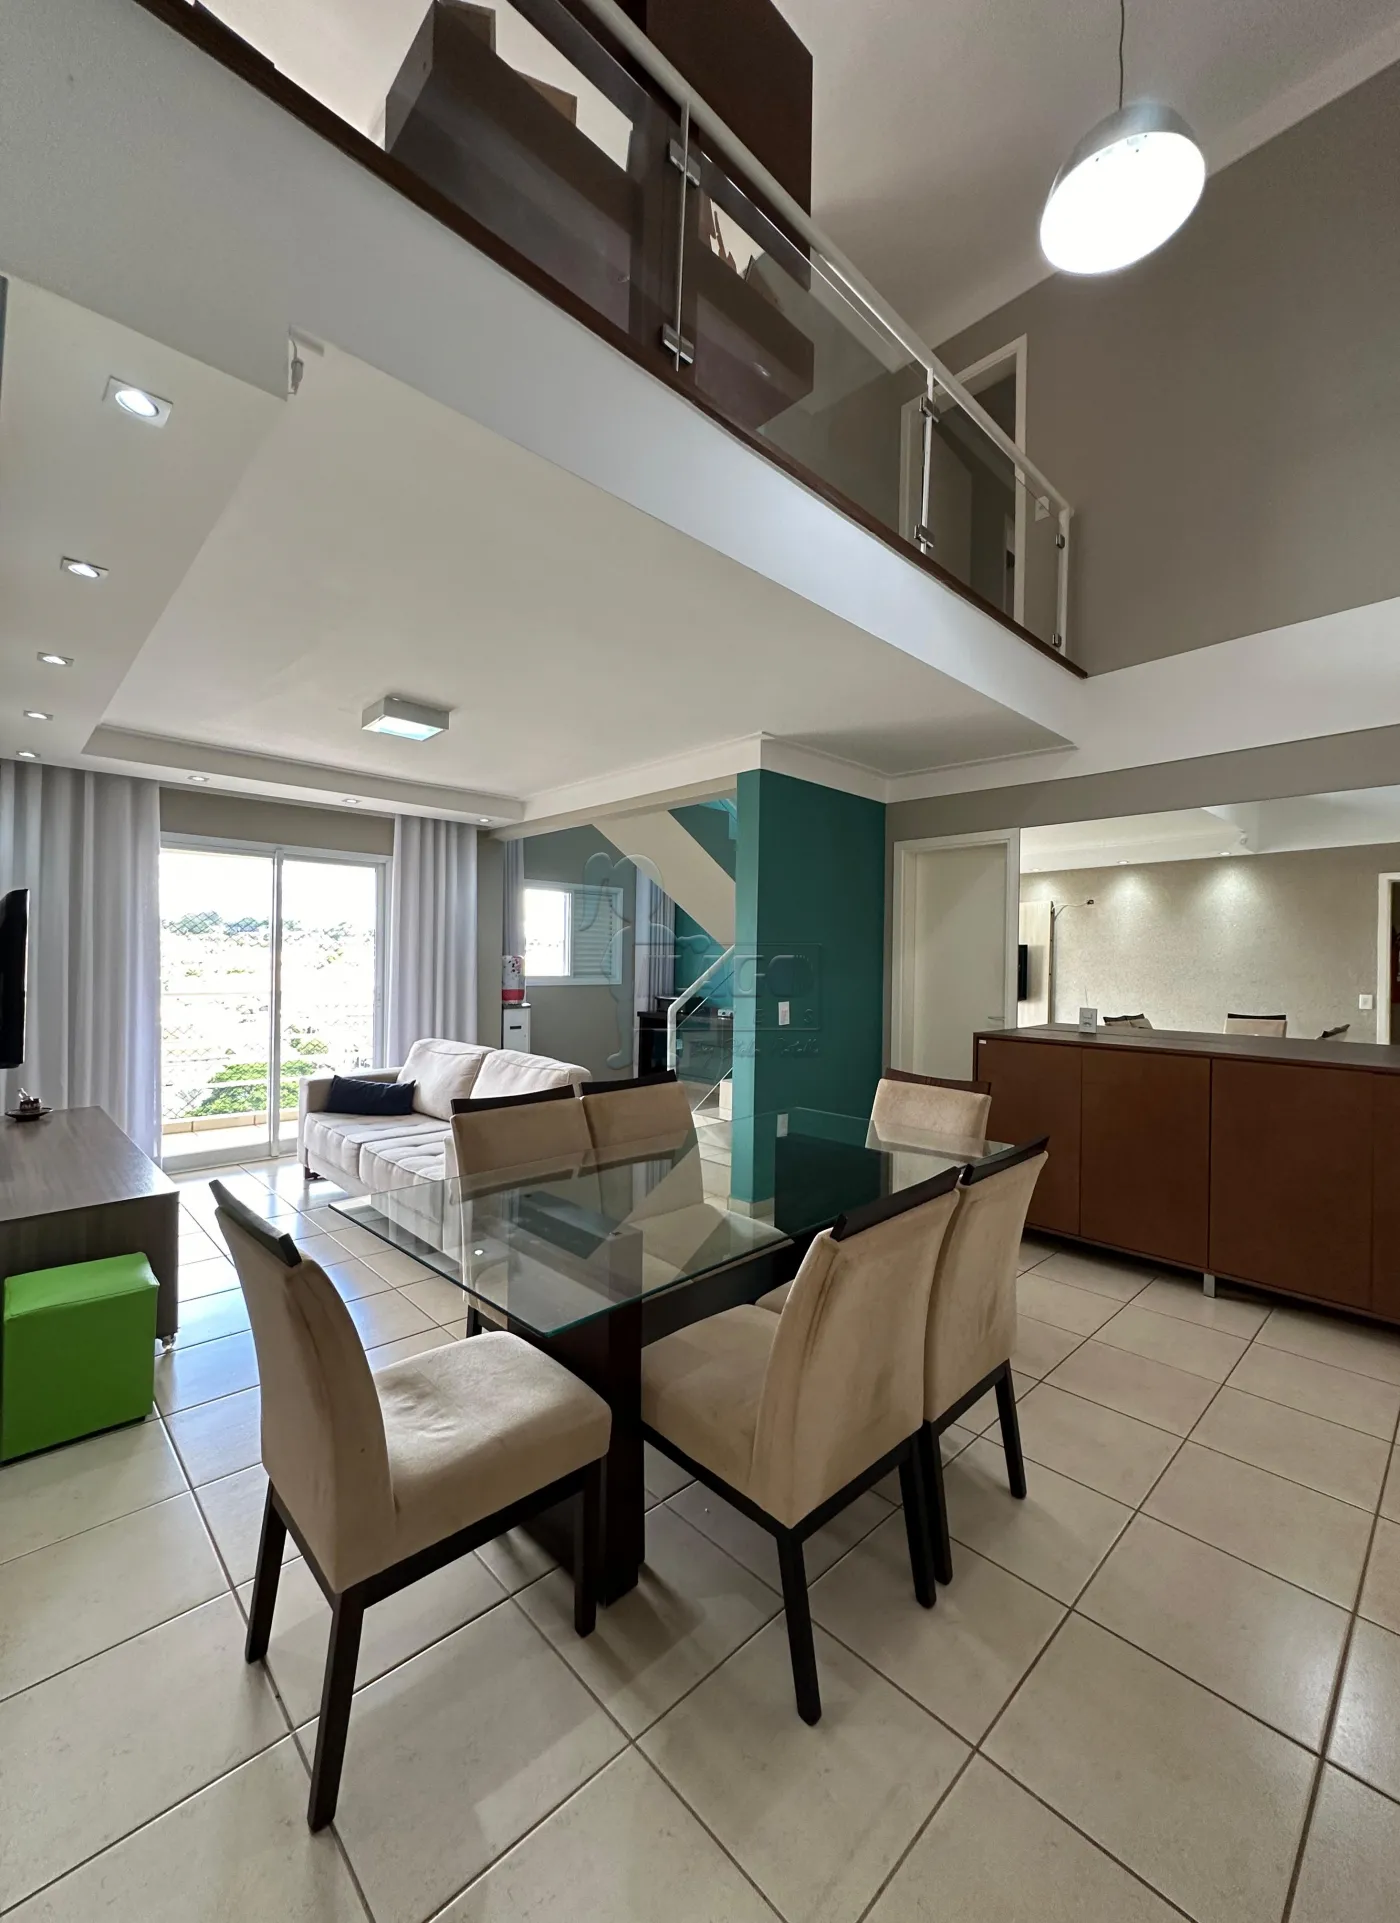 Comprar Apartamento / Duplex em Jaboticabal R$ 650.000,00 - Foto 5